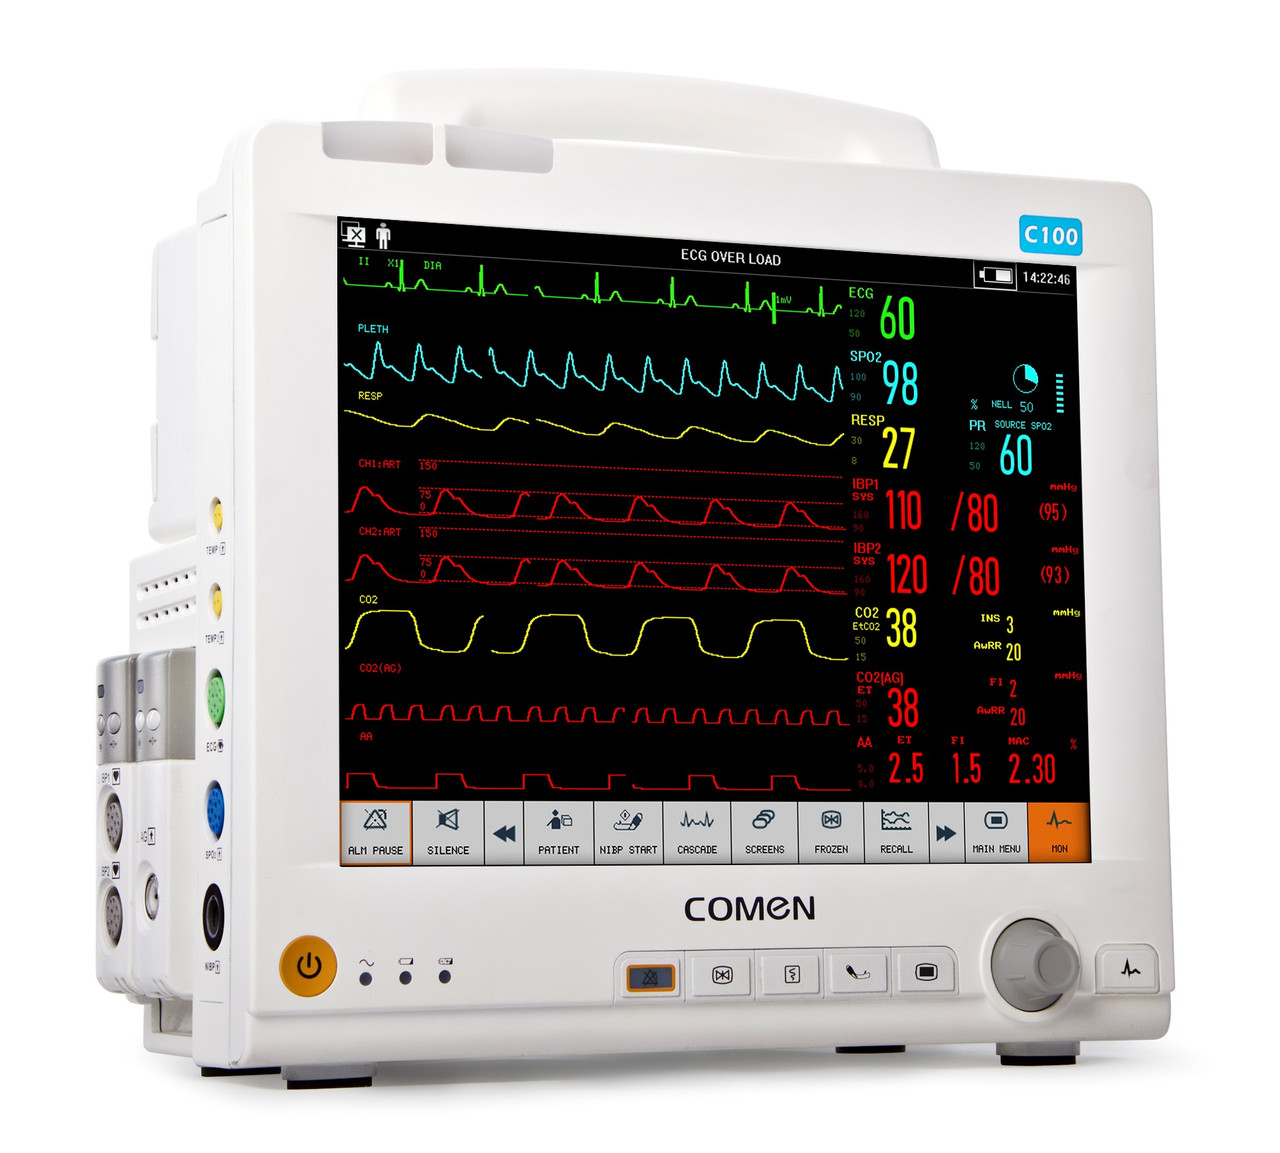 Прикроватные мониторы пациента для всех отделений больницы Comen Medical к модульного монитора C100